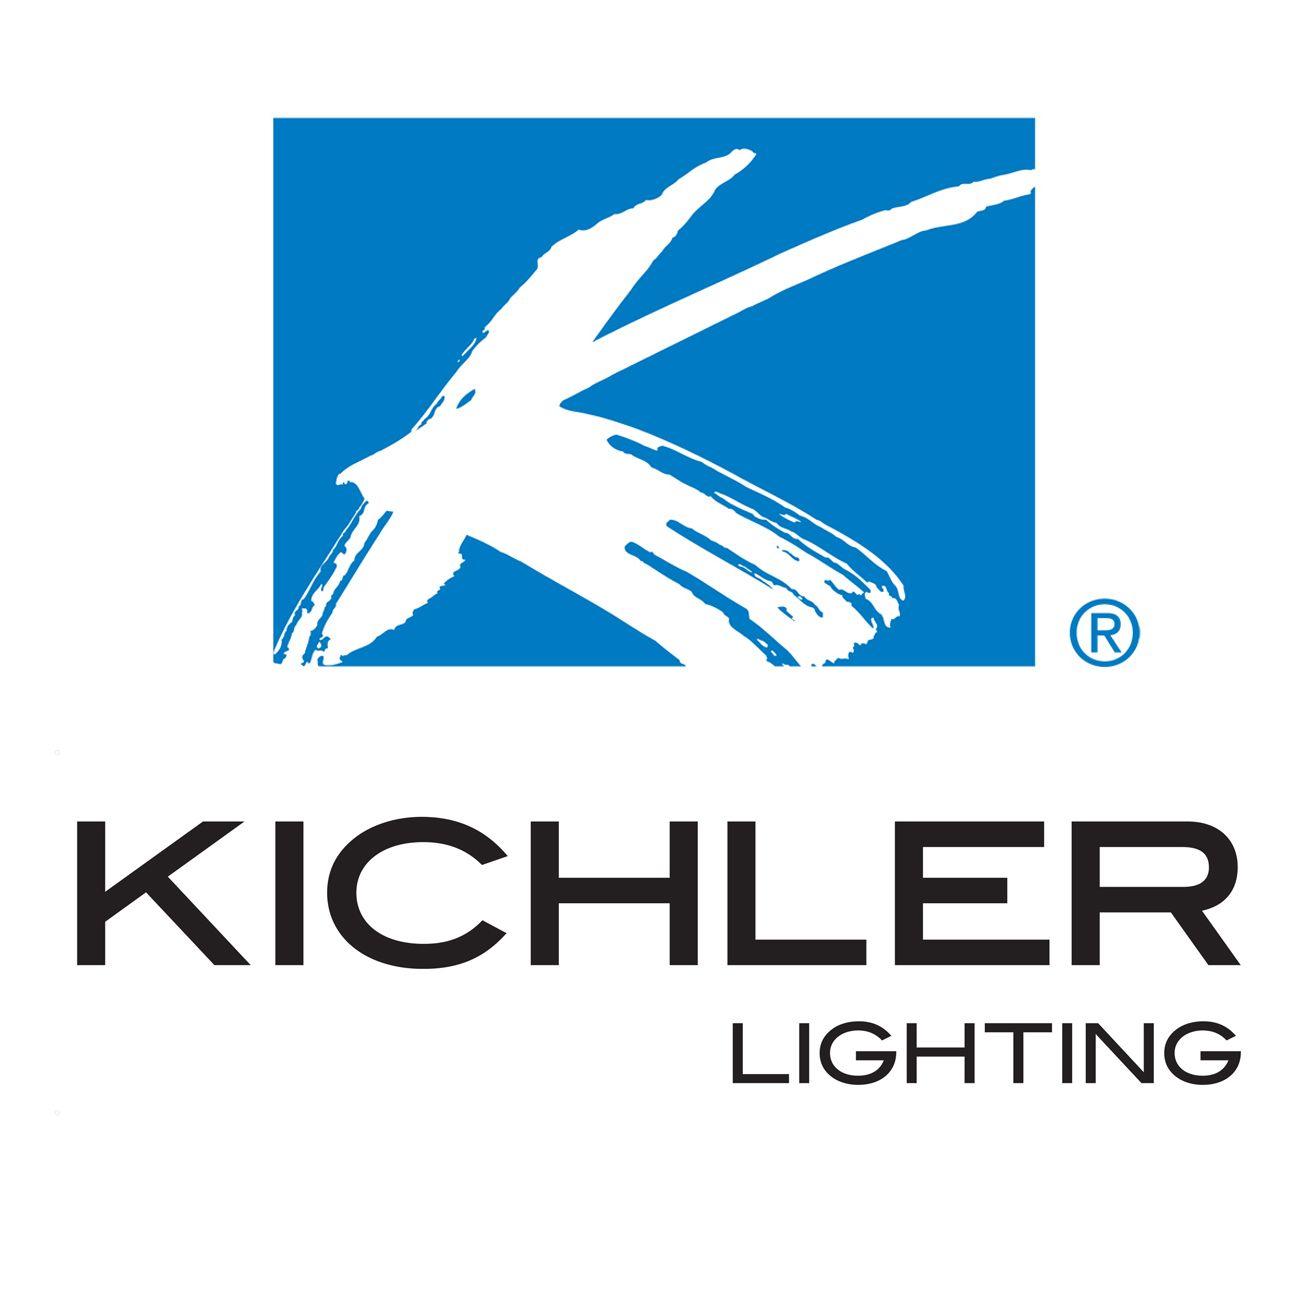 Kichler Logo - Hi-Tech Irrigation Landscape Lighting Kichler Outdoor Lighting